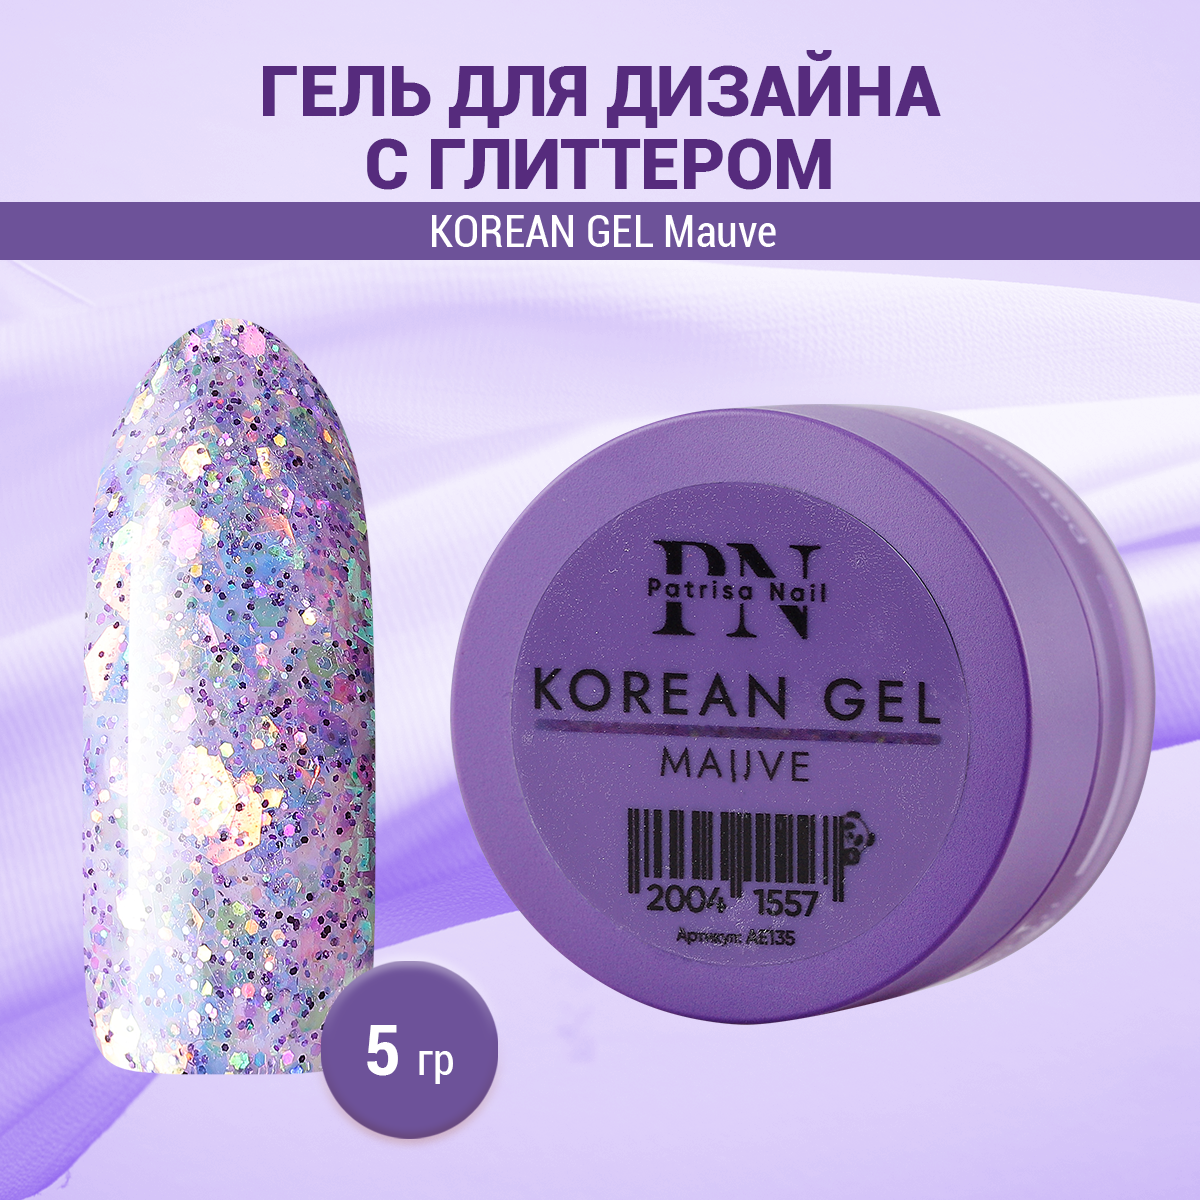 Гель для дизайна Patrisa Nail Korean Gel Mauve 5г Фиолетовый